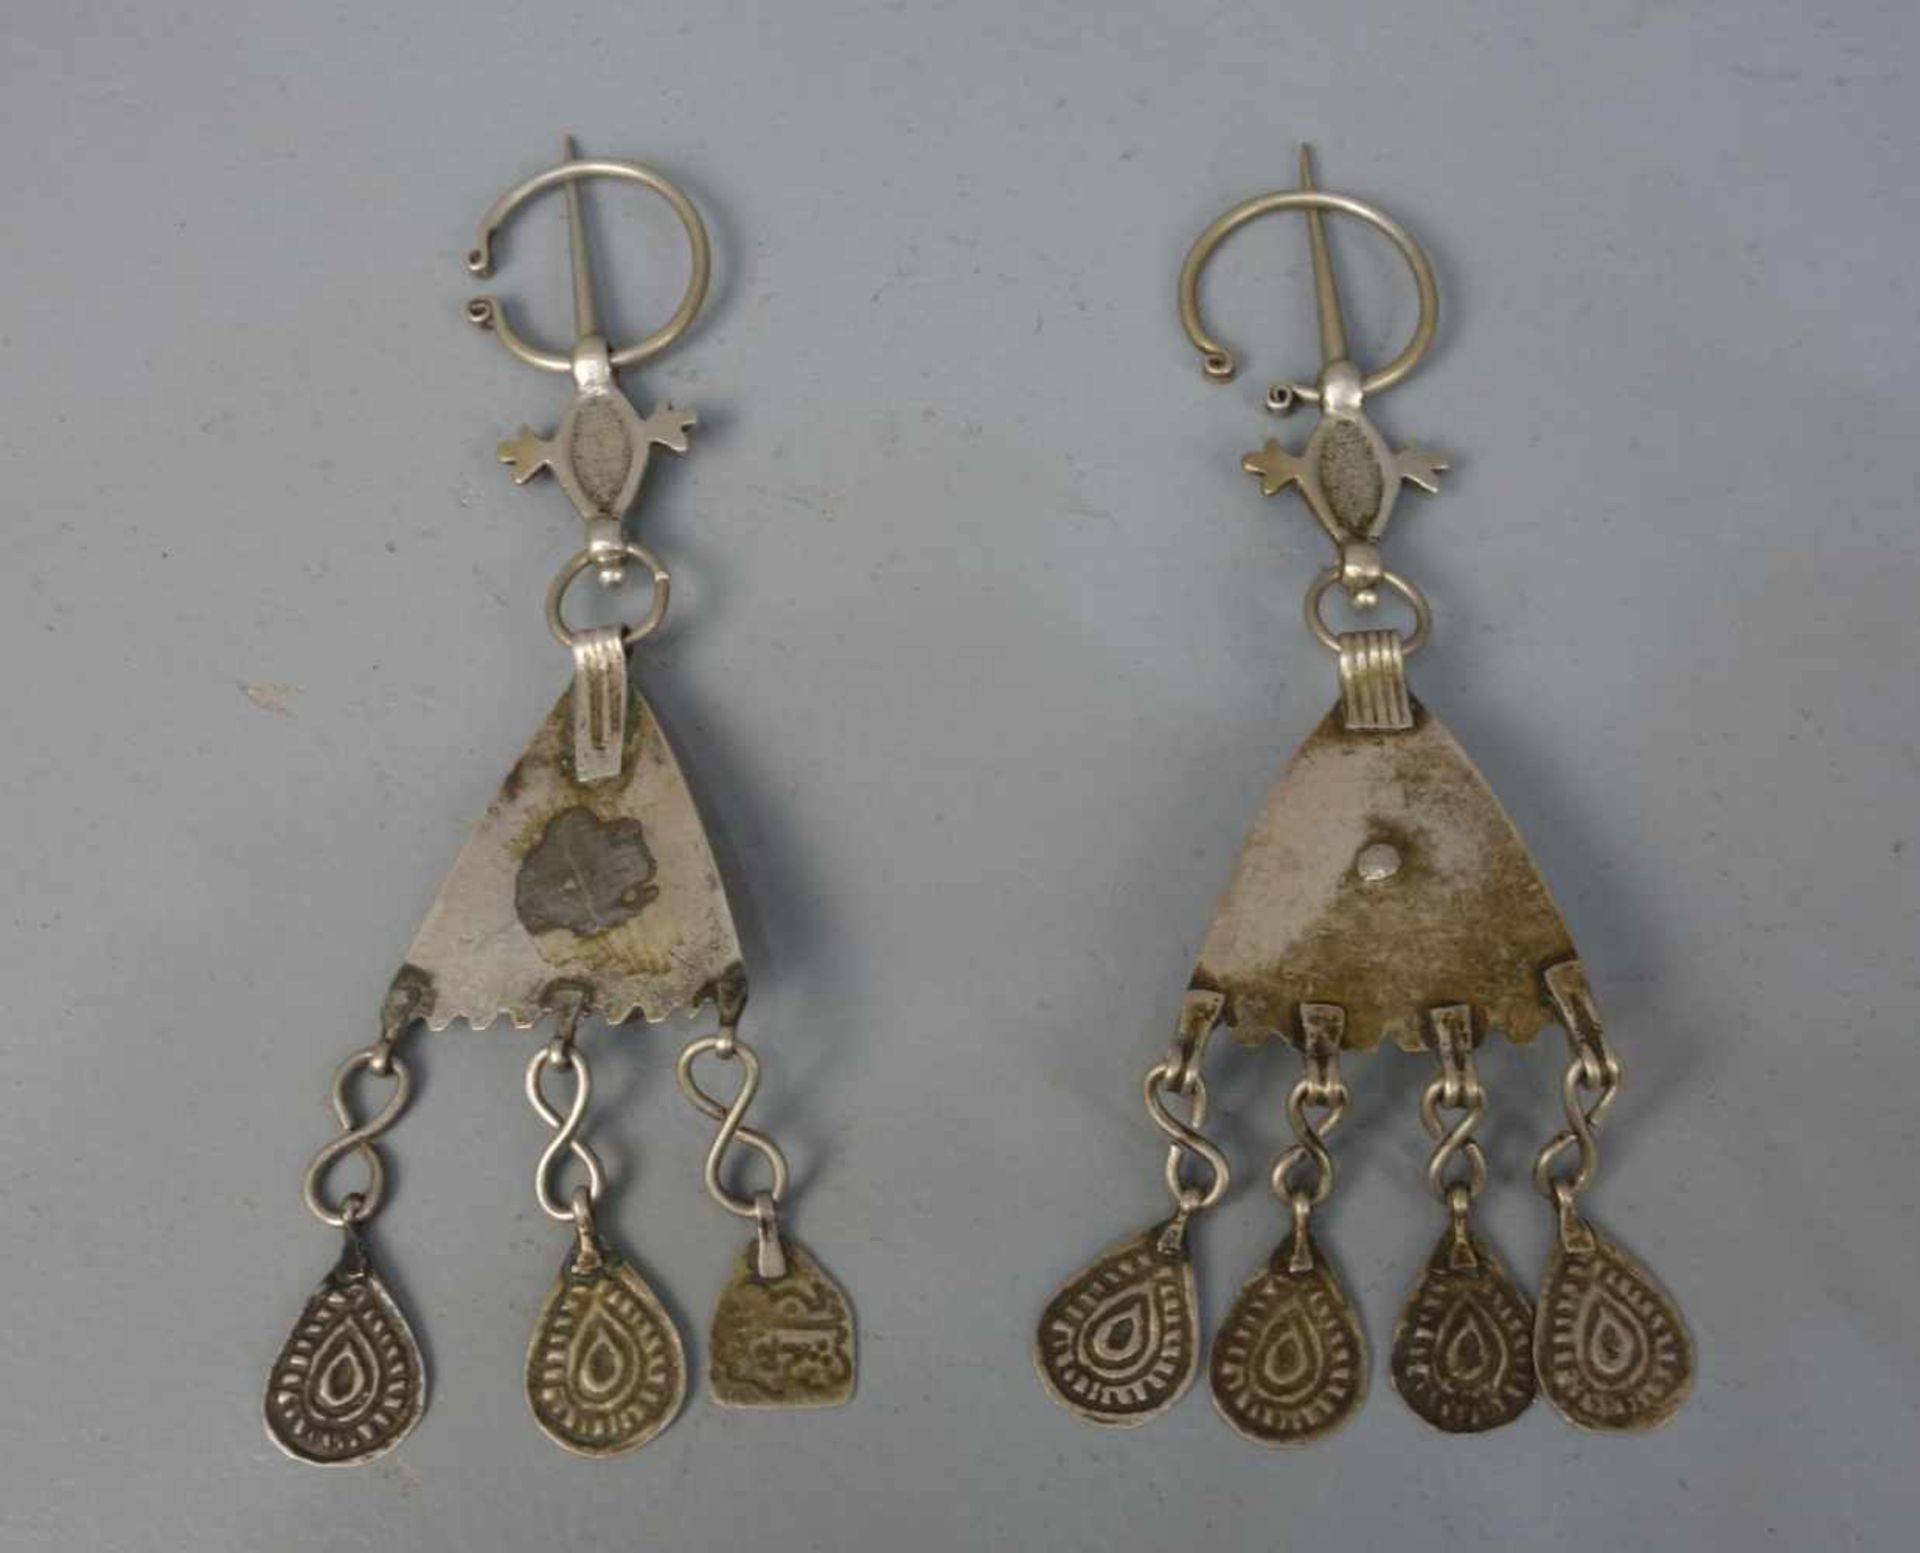 BERBER-SCHMUCK: FIBELPAAR / oriental accessoires, Midelt / Marokko, wohl Silber (63 g). Fibeln mit - Image 2 of 2